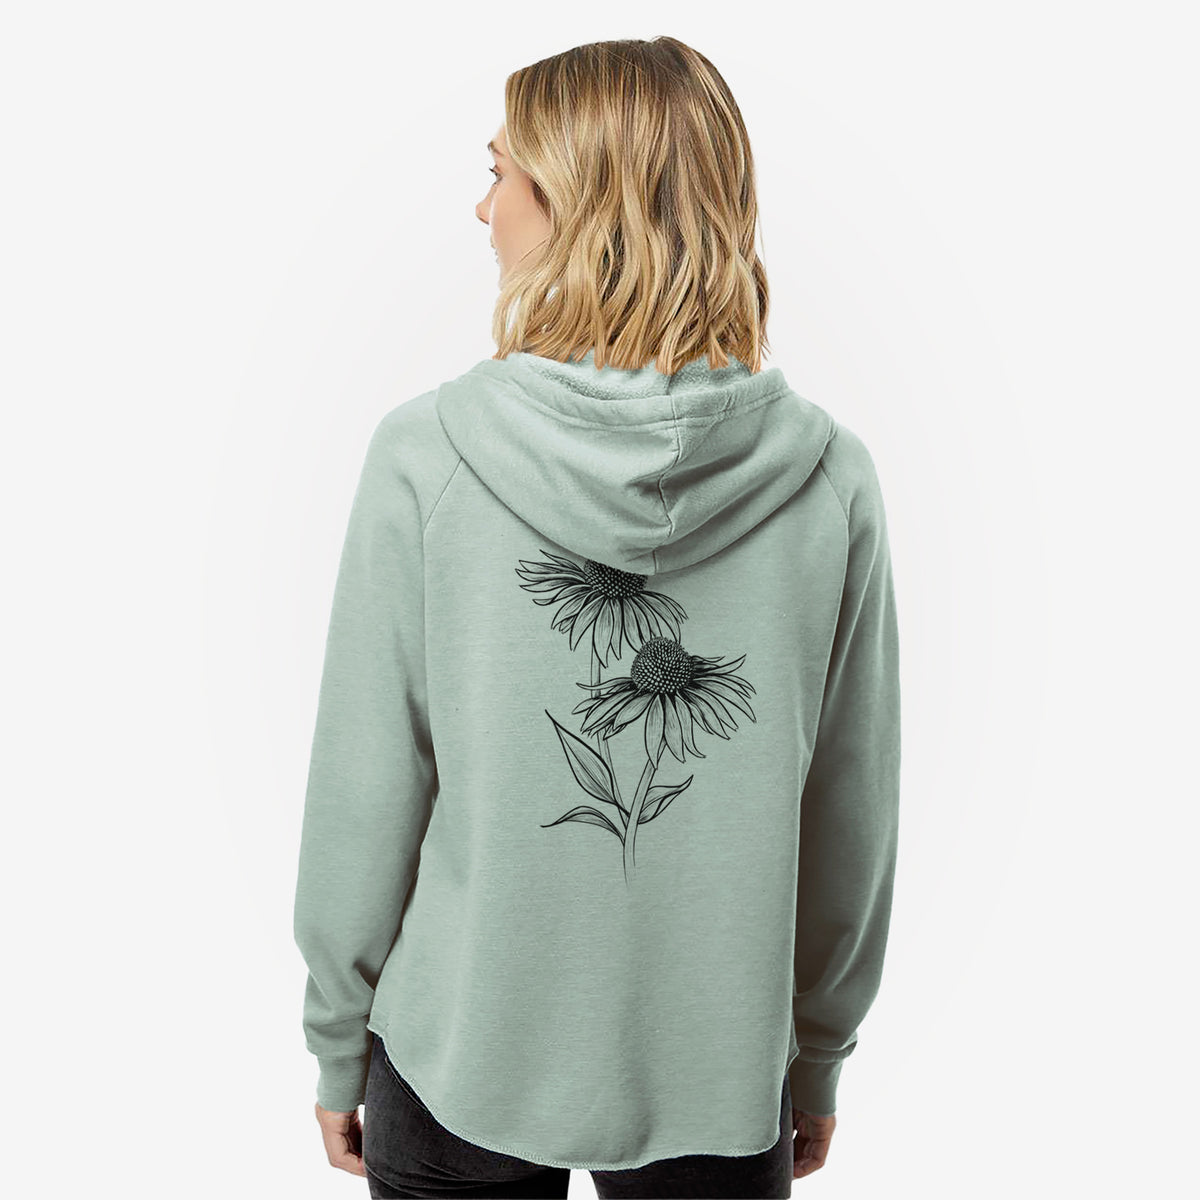 Coneflower - Echinacea purpurea - Women&#39;s Cali Wave Zip-Up Sweatshirt